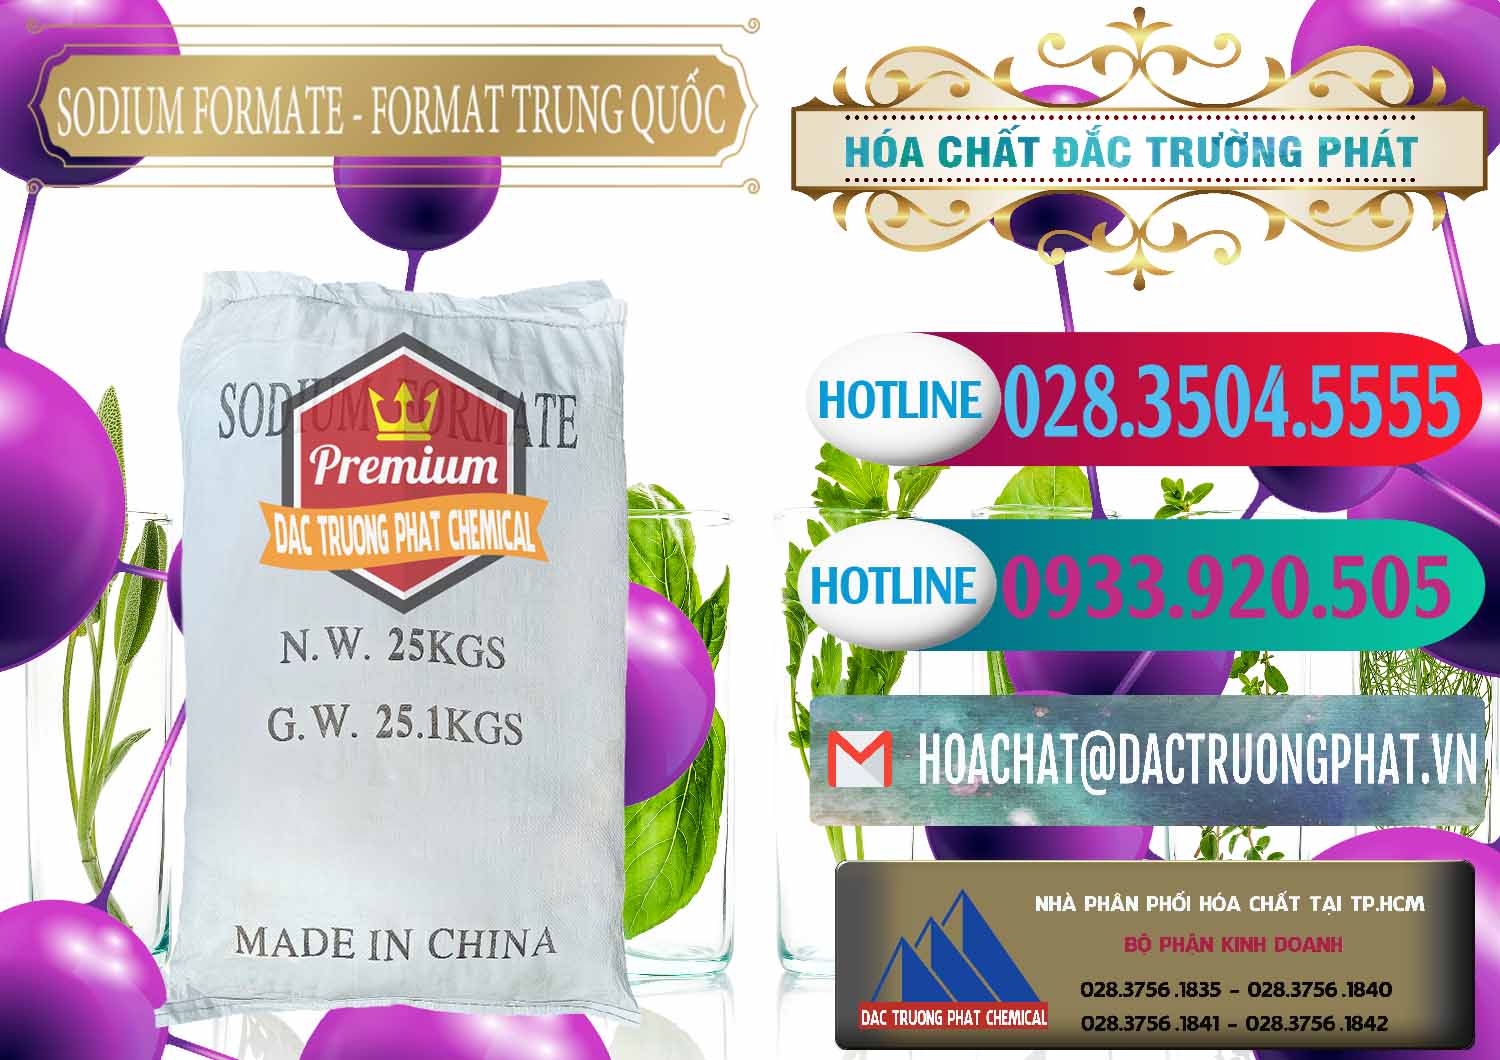 Đơn vị bán & cung cấp Sodium Formate - Natri Format Trung Quốc China - 0142 - Cung cấp ( nhập khẩu ) hóa chất tại TP.HCM - truongphat.vn